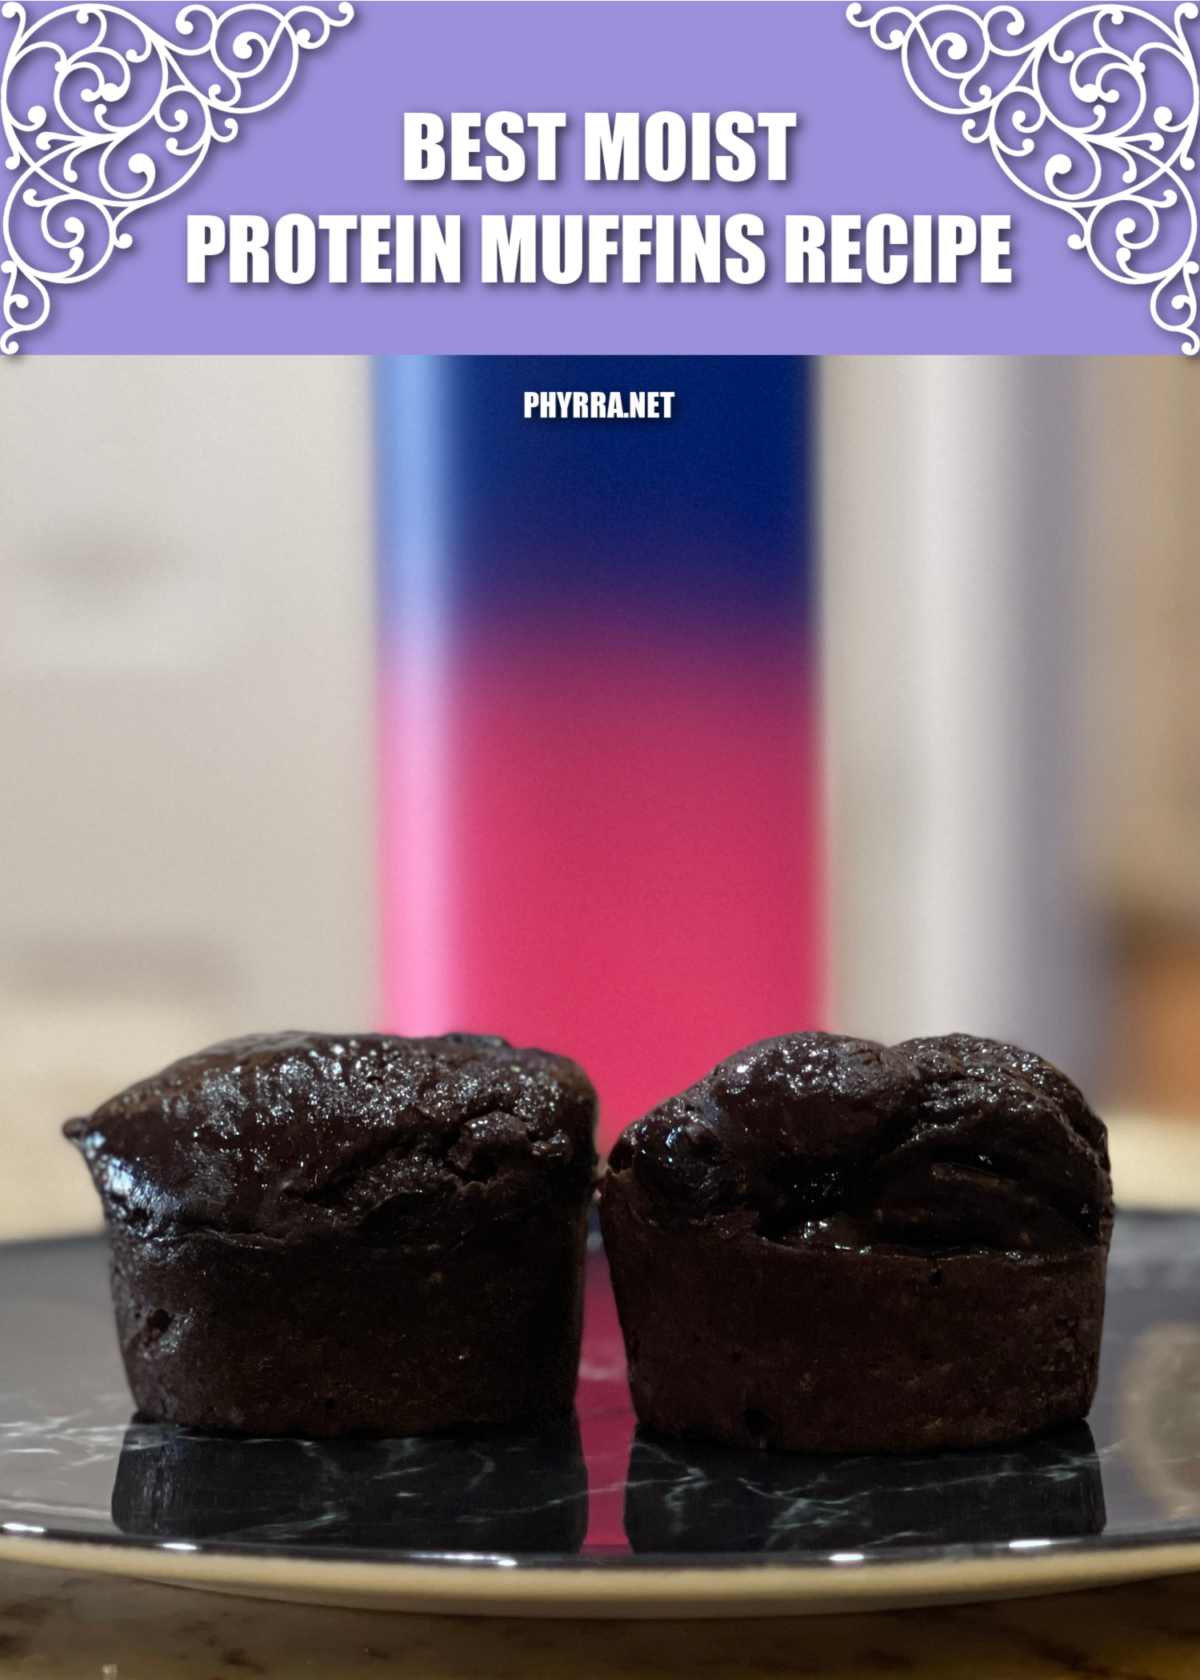 Best Moist Protein Muffin Recipe